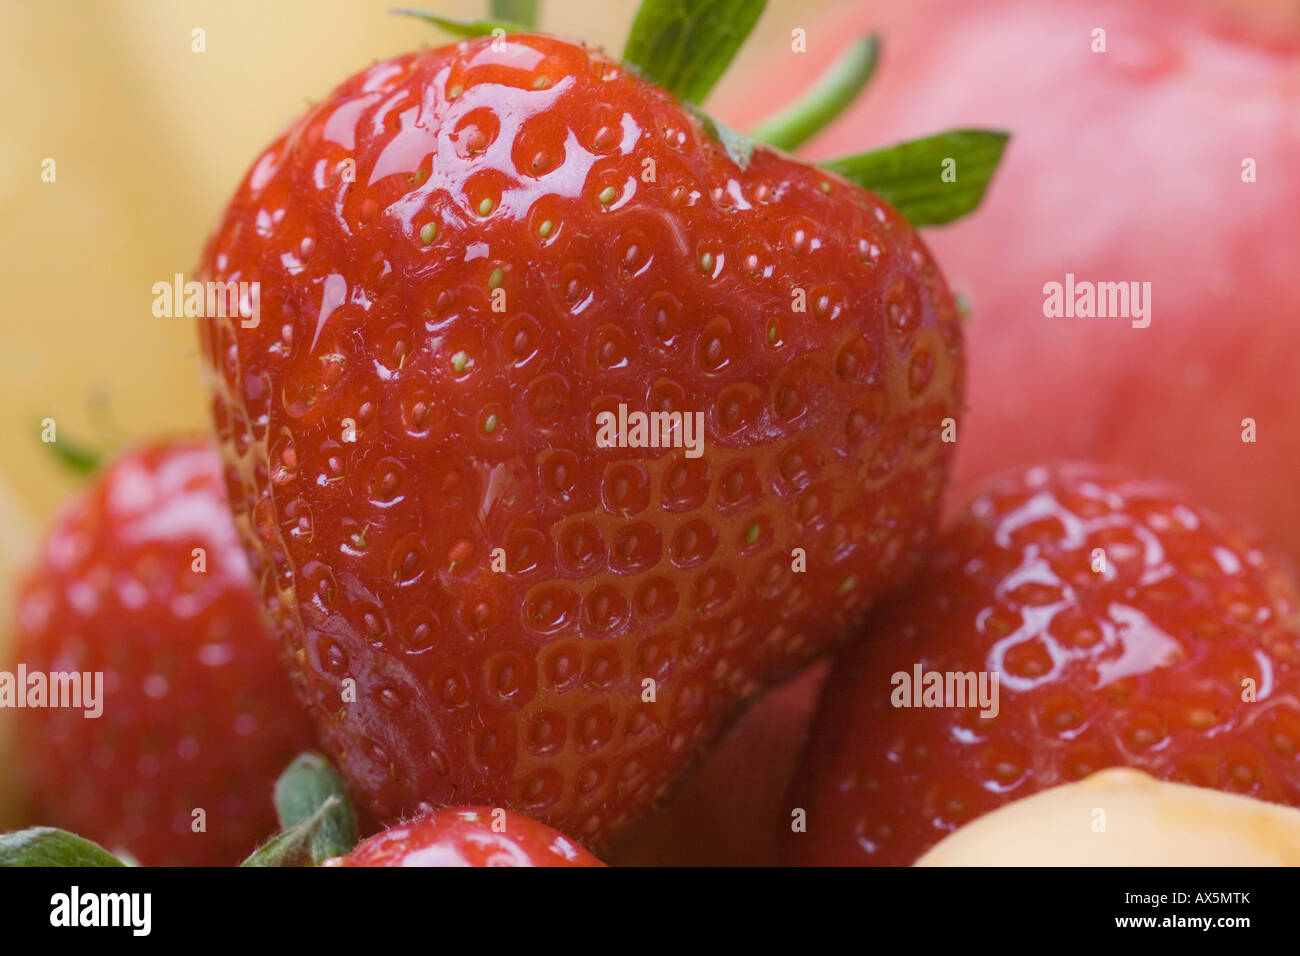 Strawberries (Fragaria) Stock Photo